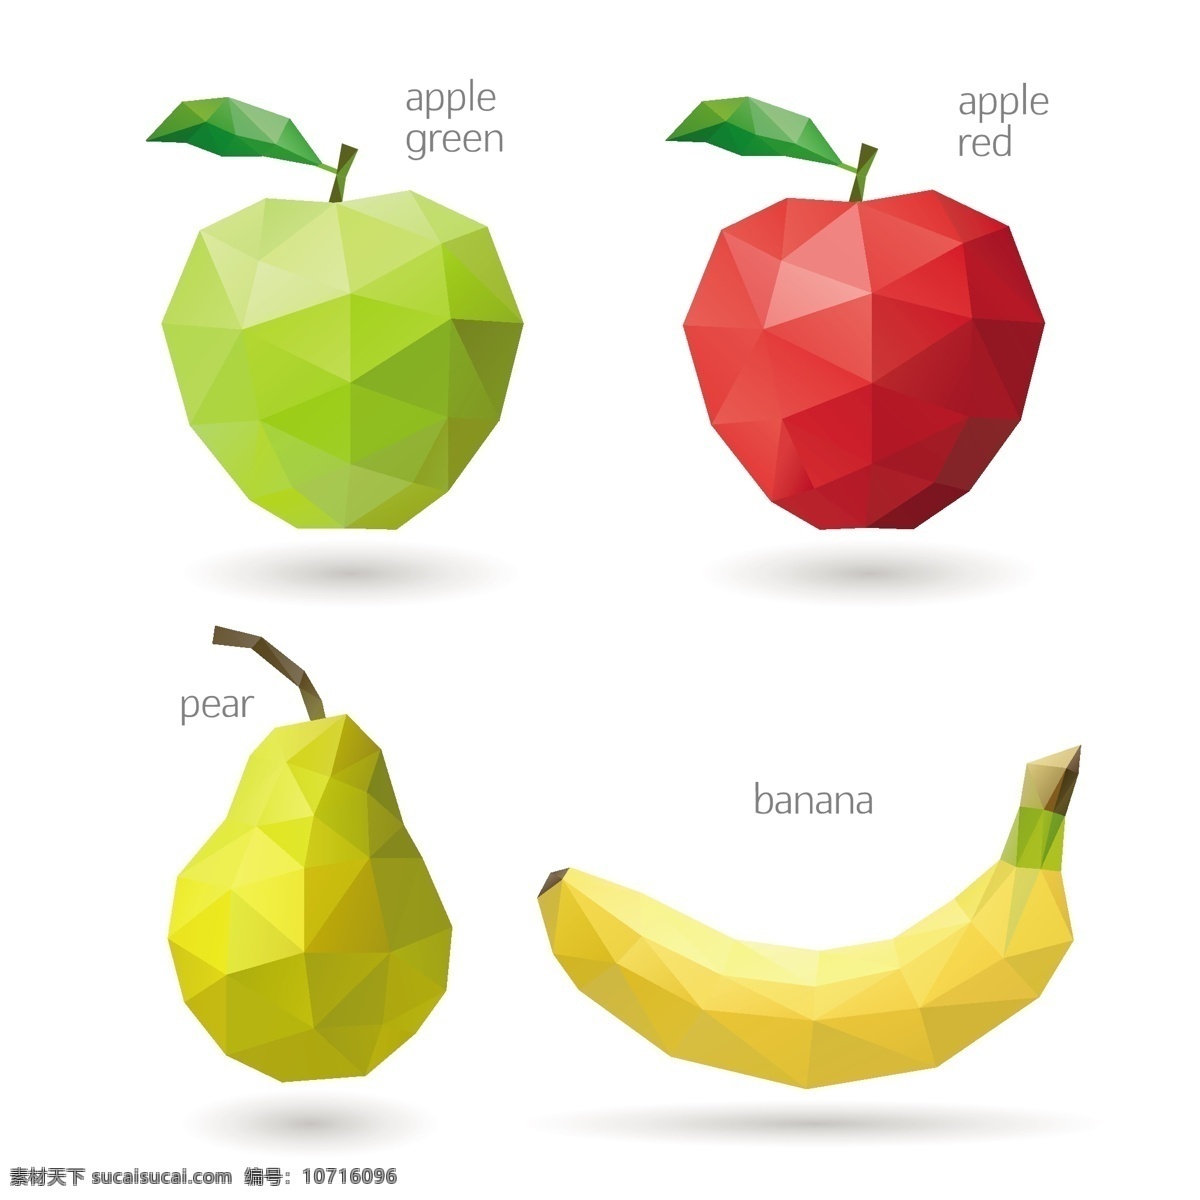 创意 水果 三角形 苹果 梨子 香蕉 创意水果 卡通水果 矢量水果 多边形水果 三角形水果 生活百科 矢量素材 白色